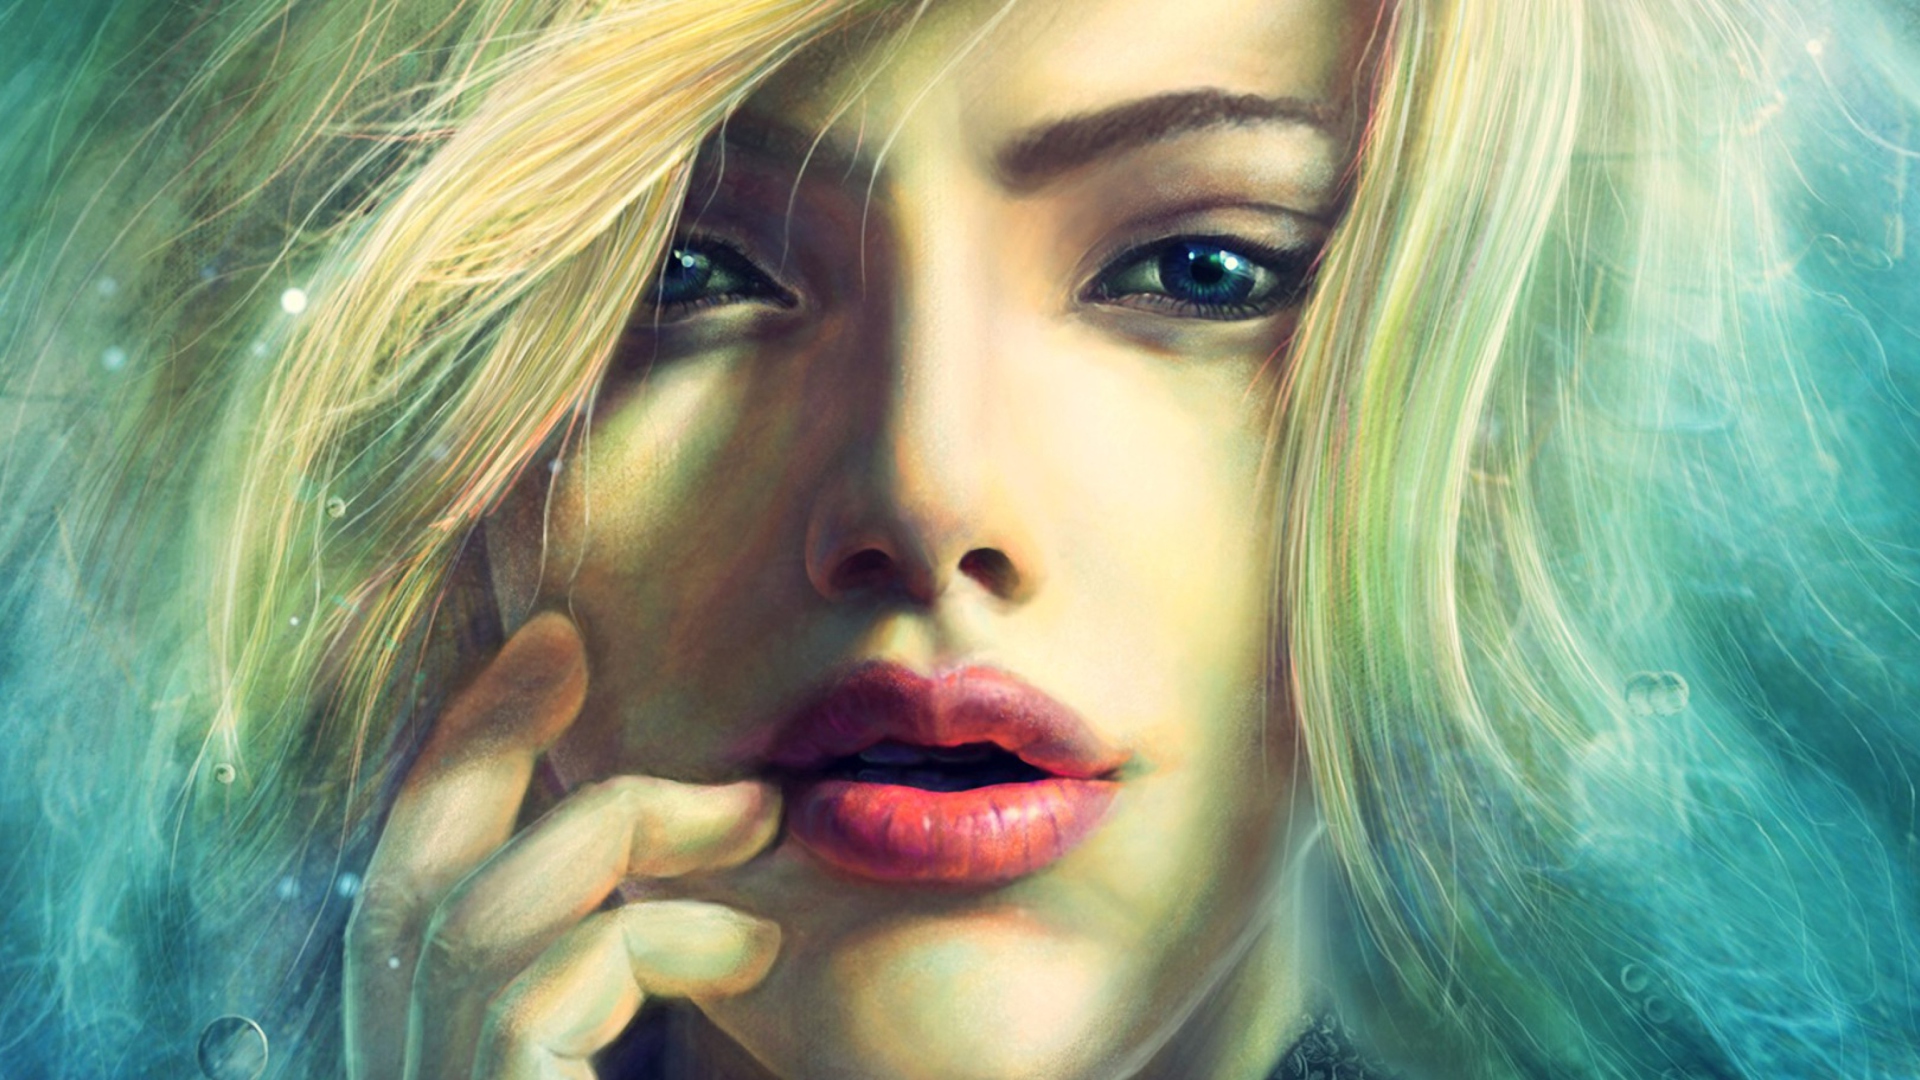 Обои Blonde Girl Painting 1920x1080